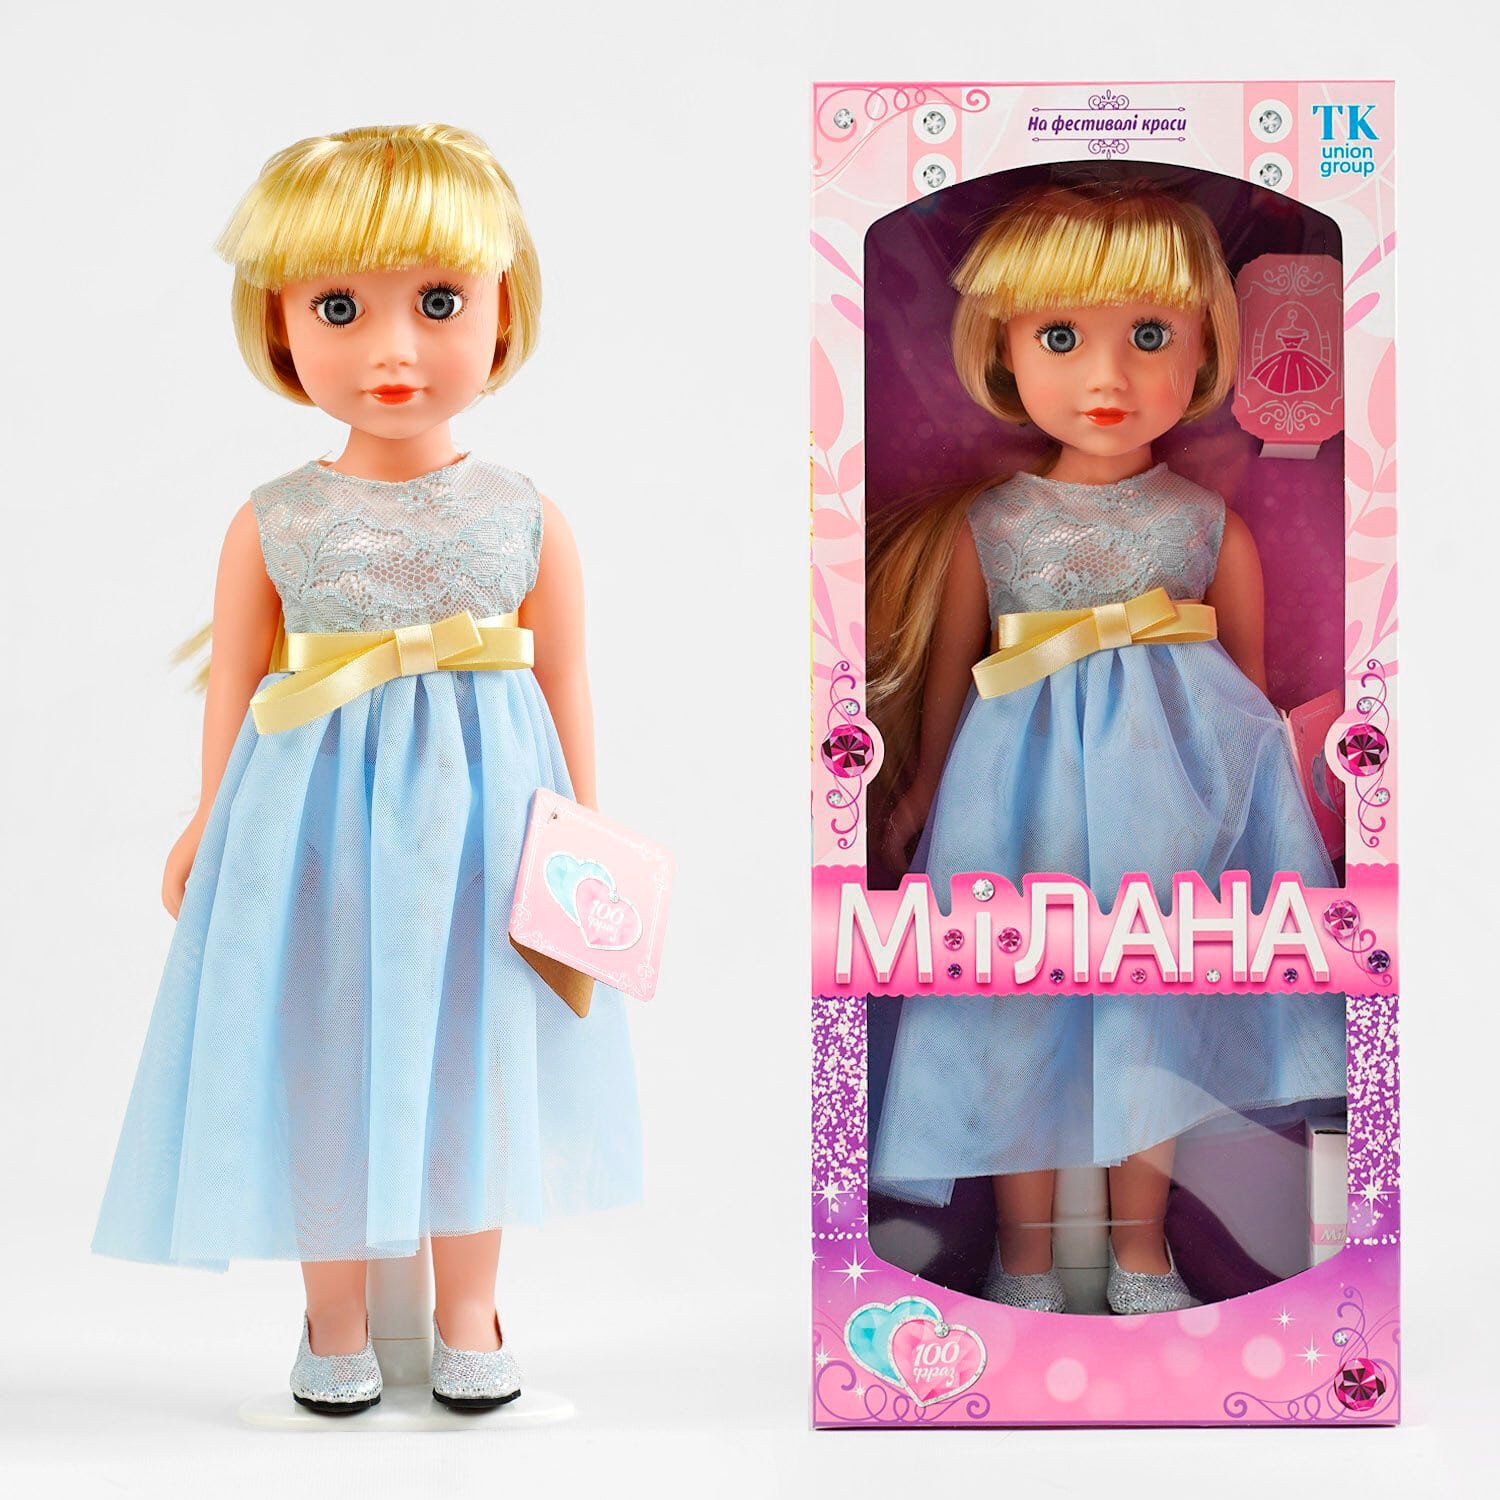 Кукла говорит 100 фраз на украинском языке (ML - 20308) высота 44 см, в коробке